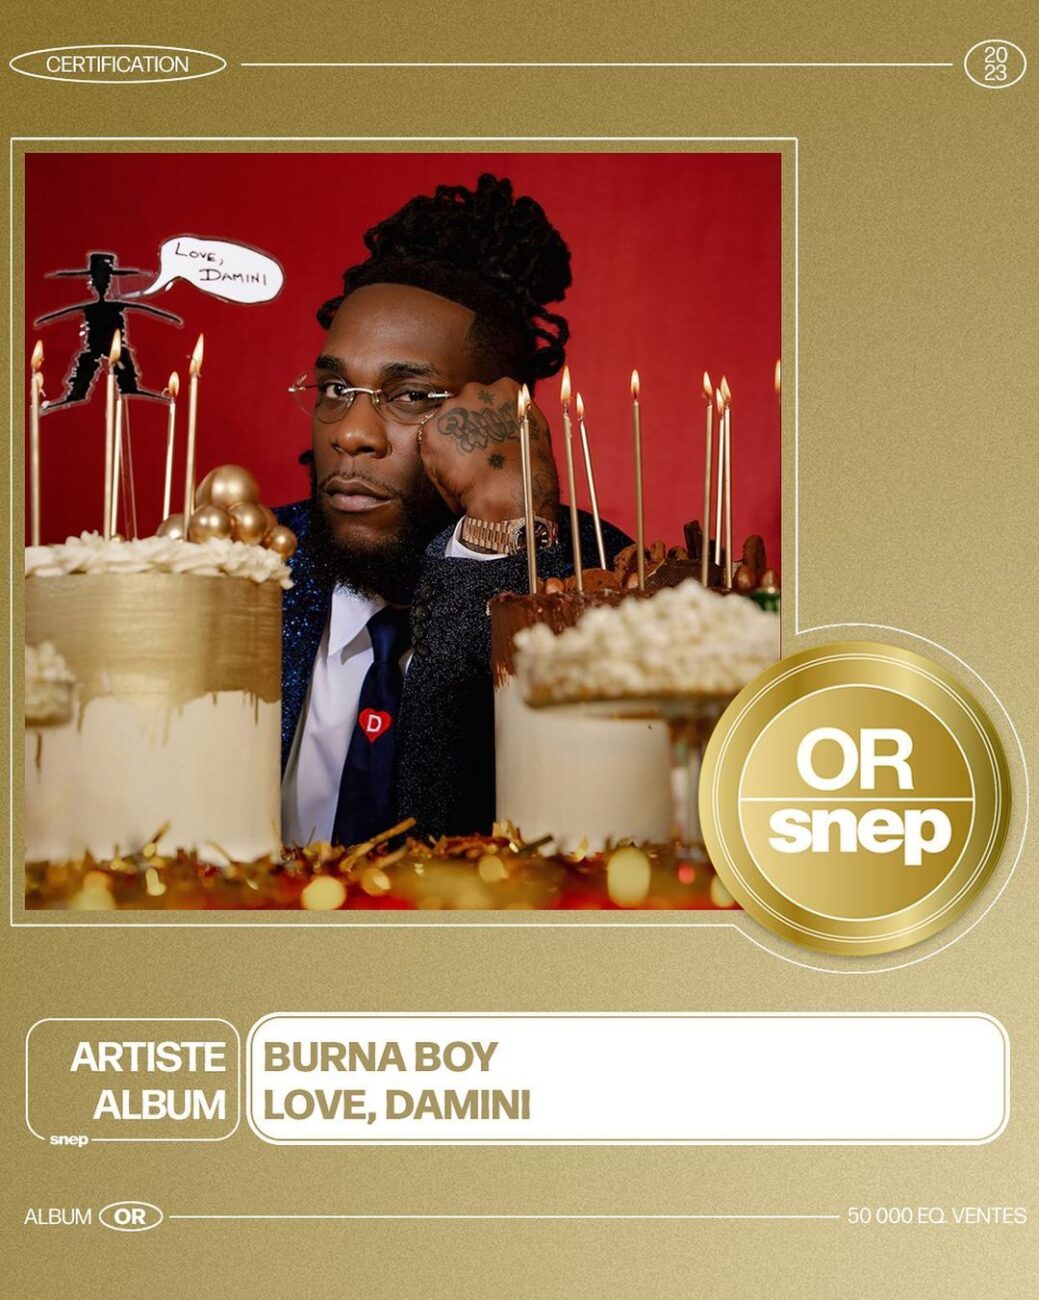 Burna Boy's Album "Love Damini" Certified Gold in France